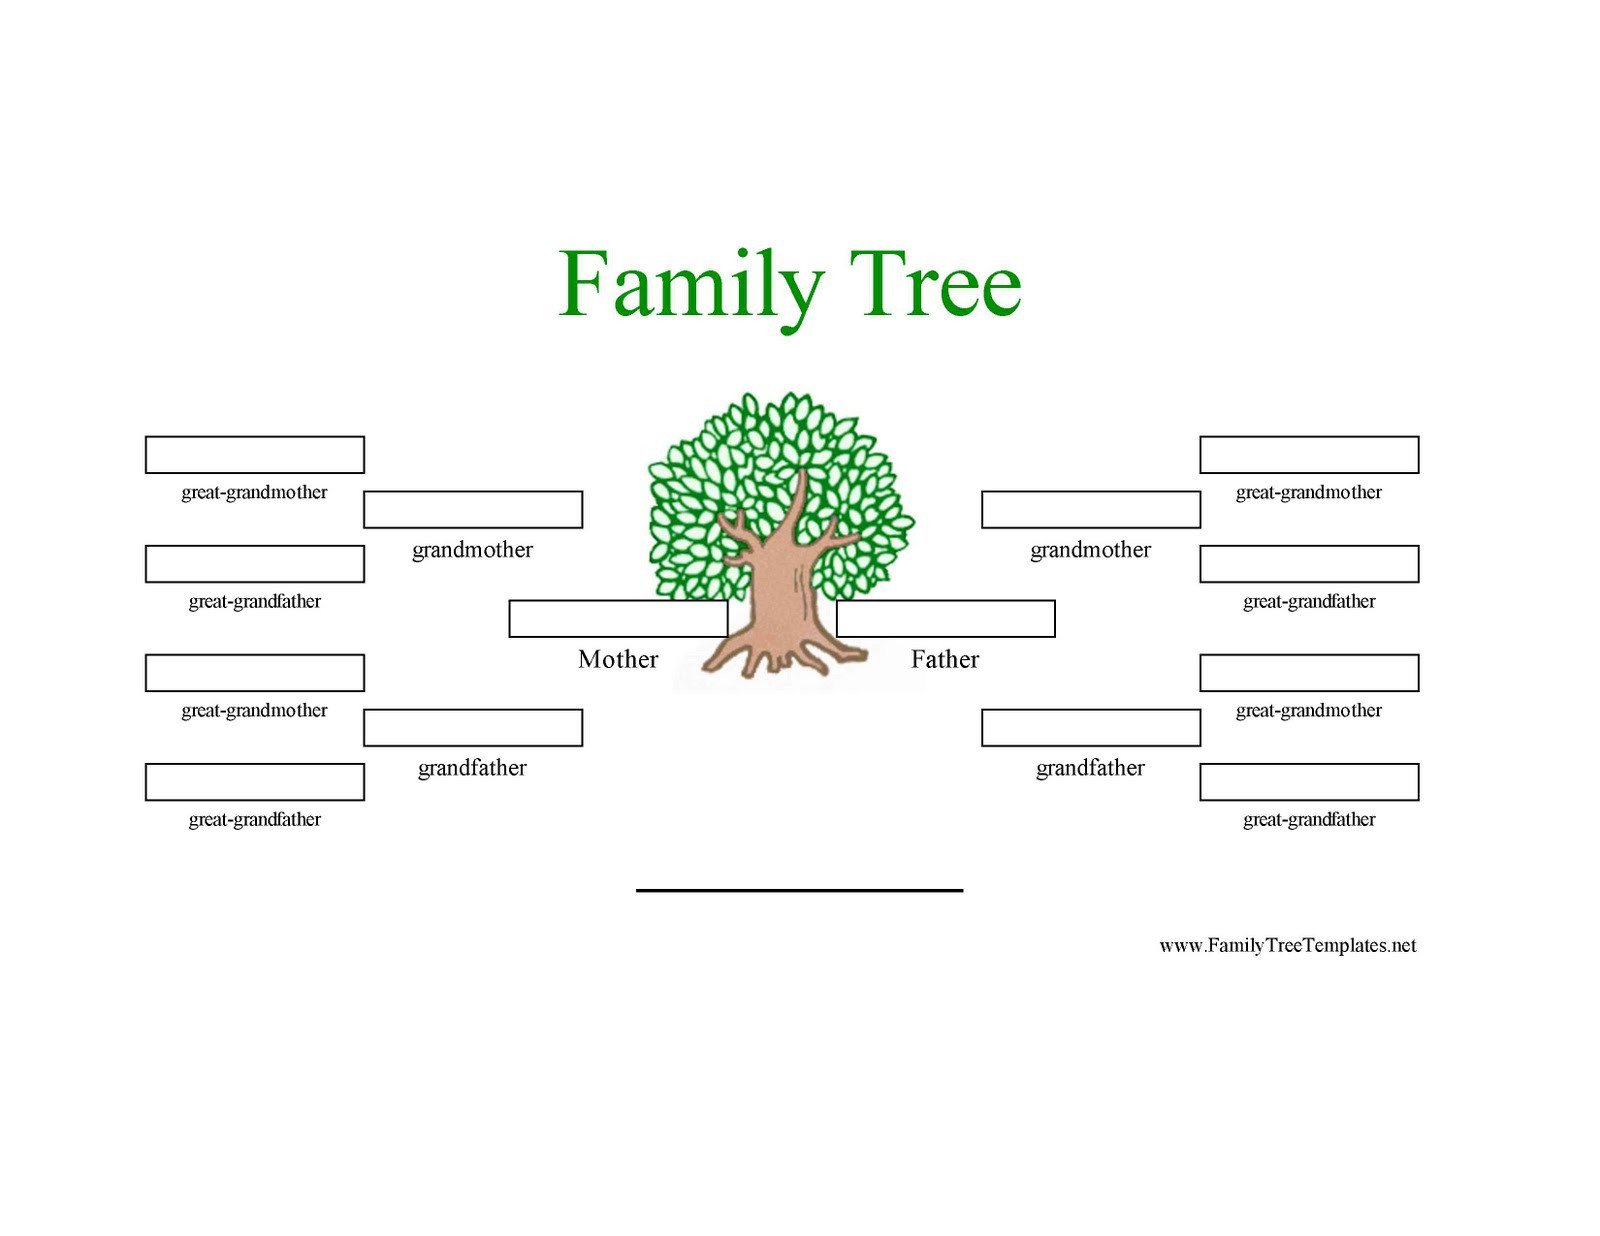 Family Tree Template Family Tree Template 3 Generations